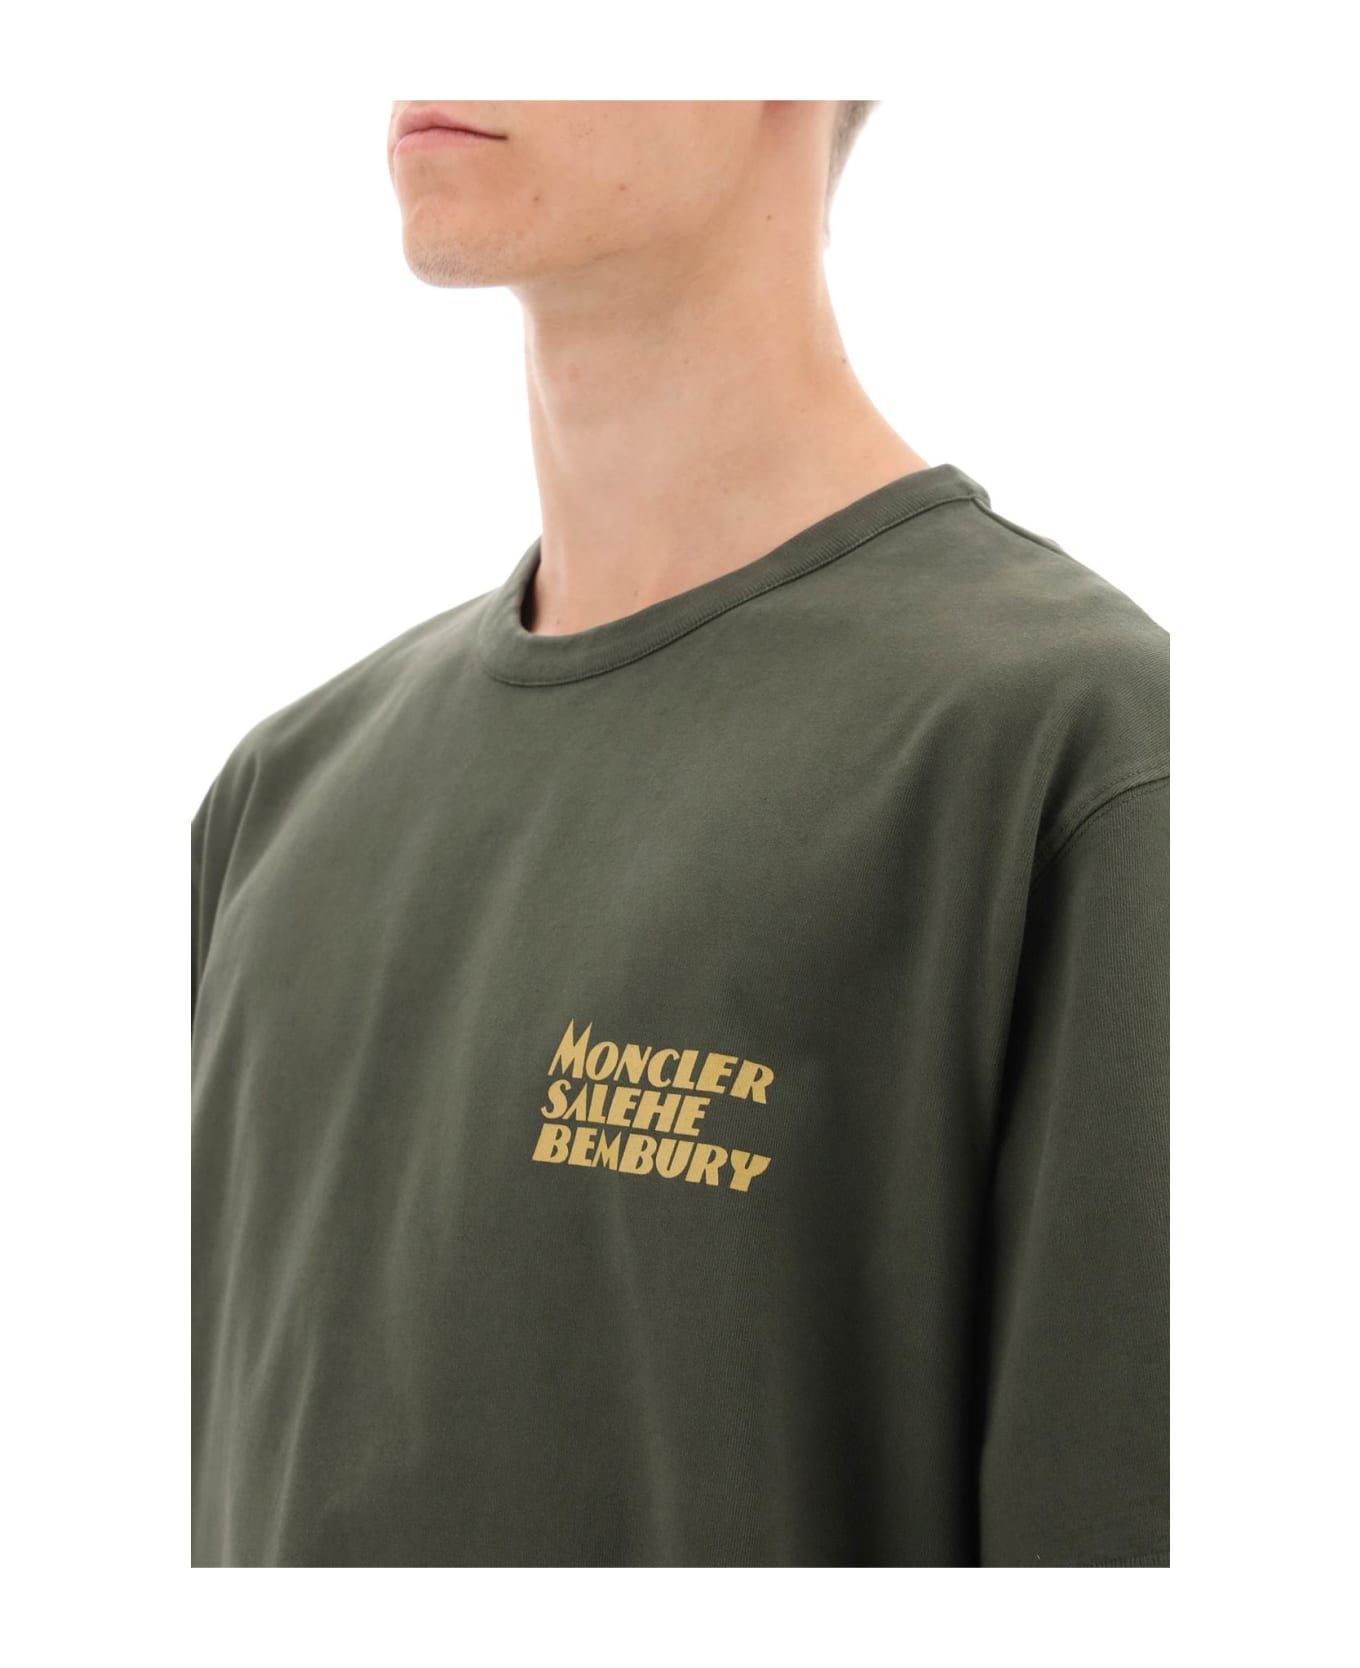 Moncler Genius Logo T-shirt - Green Tシャツ